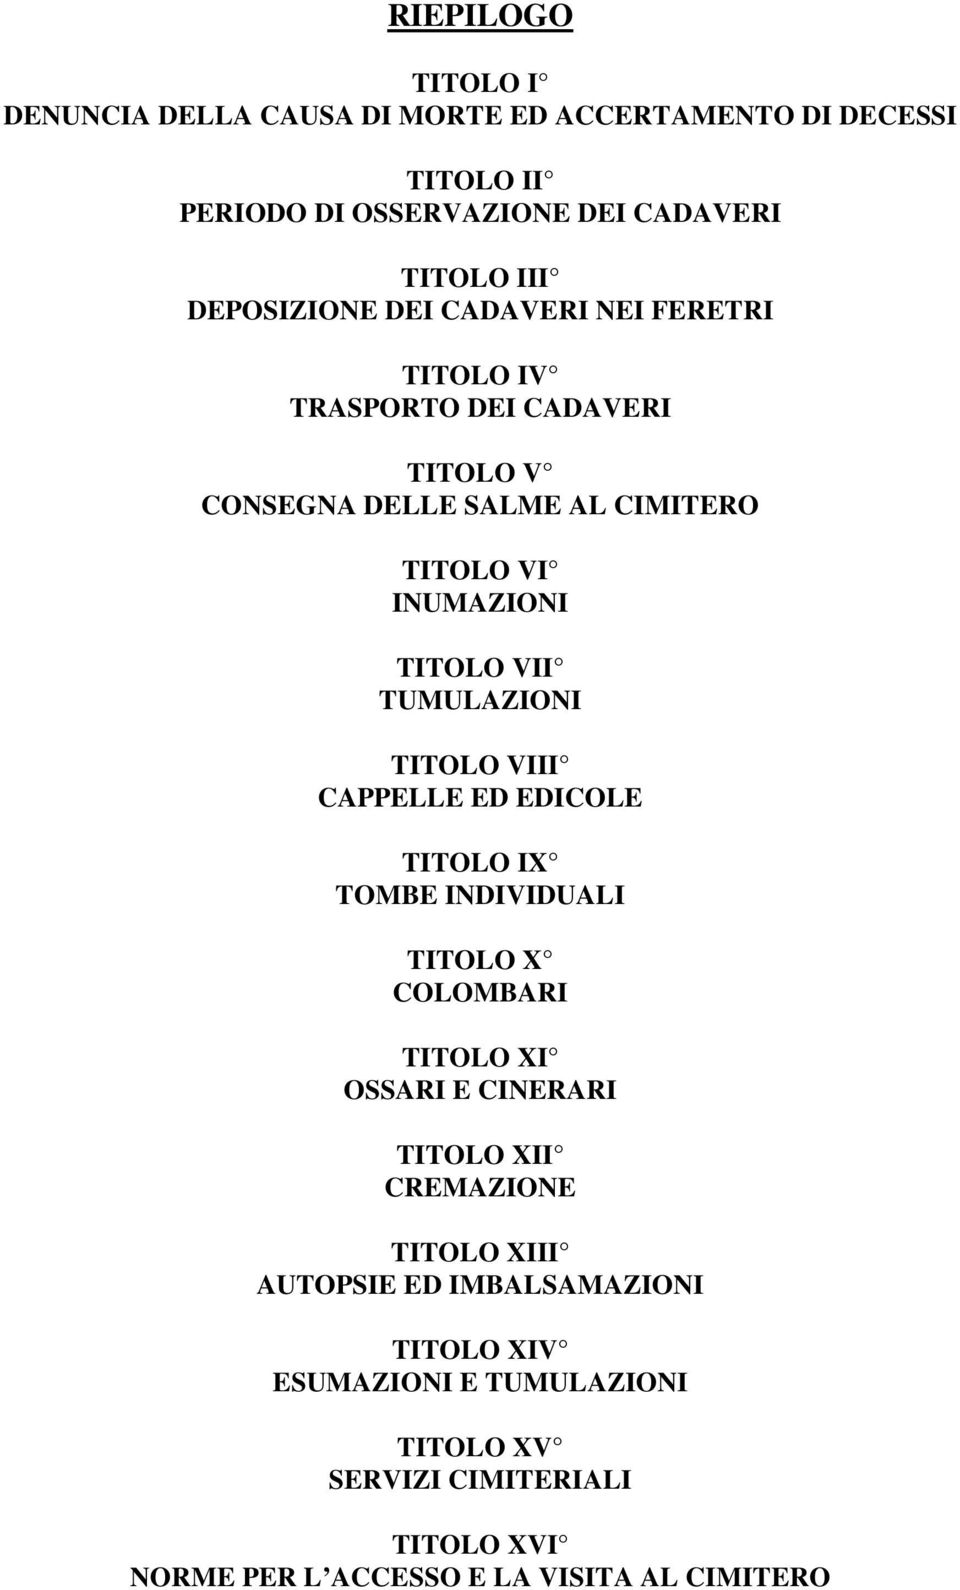 TUMULAZIONI TITOLO VIII CAPPELLE ED EDICOLE TITOLO IX TOMBE INDIVIDUALI TITOLO X COLOMBARI TITOLO XI OSSARI E CINERARI TITOLO XII CREMAZIONE